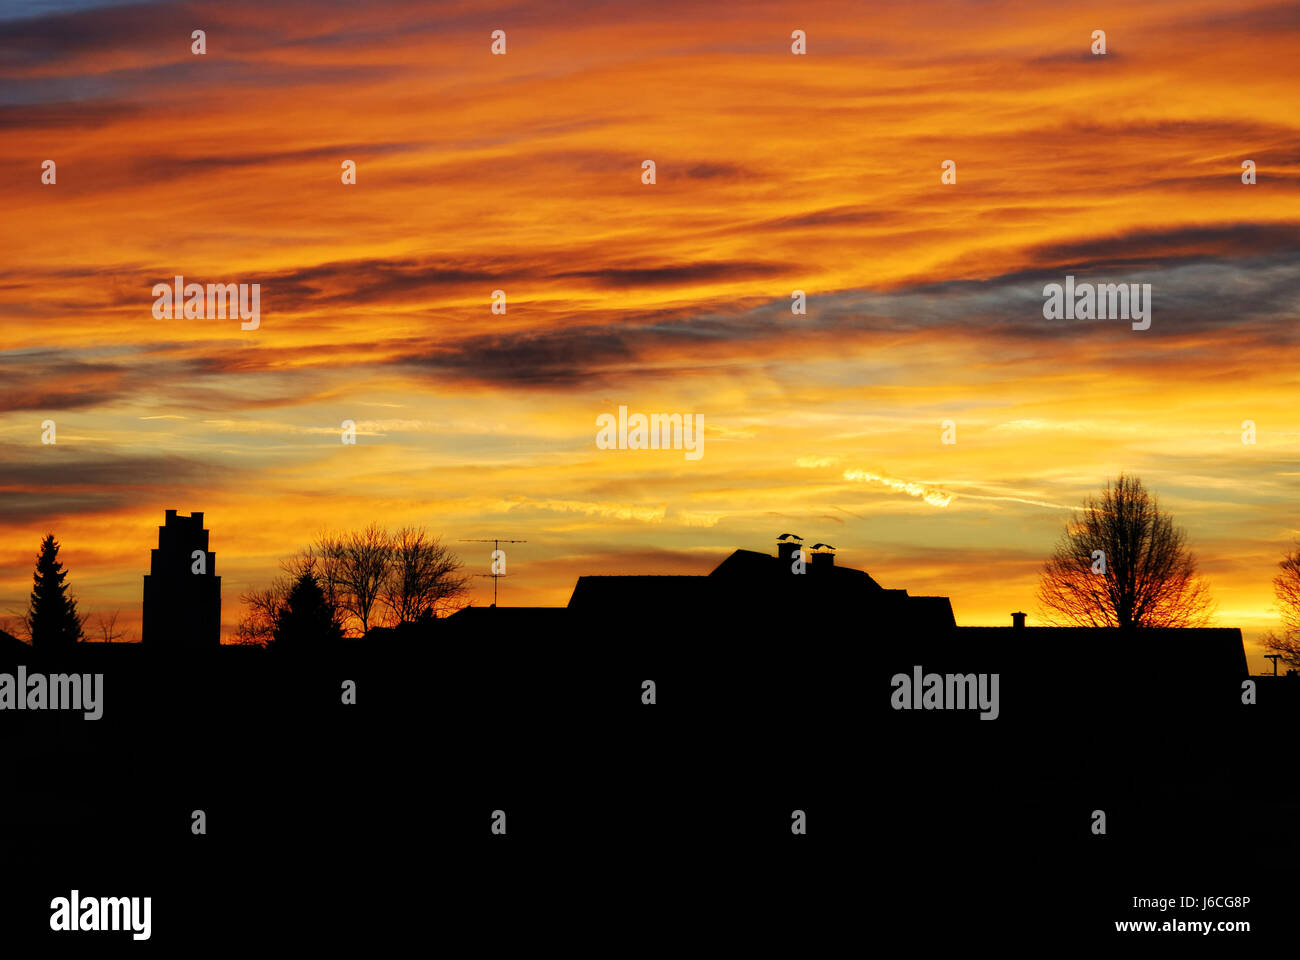 Sunset sunrise silueta firmamento cielo mercado comunitarios town house. Foto de stock